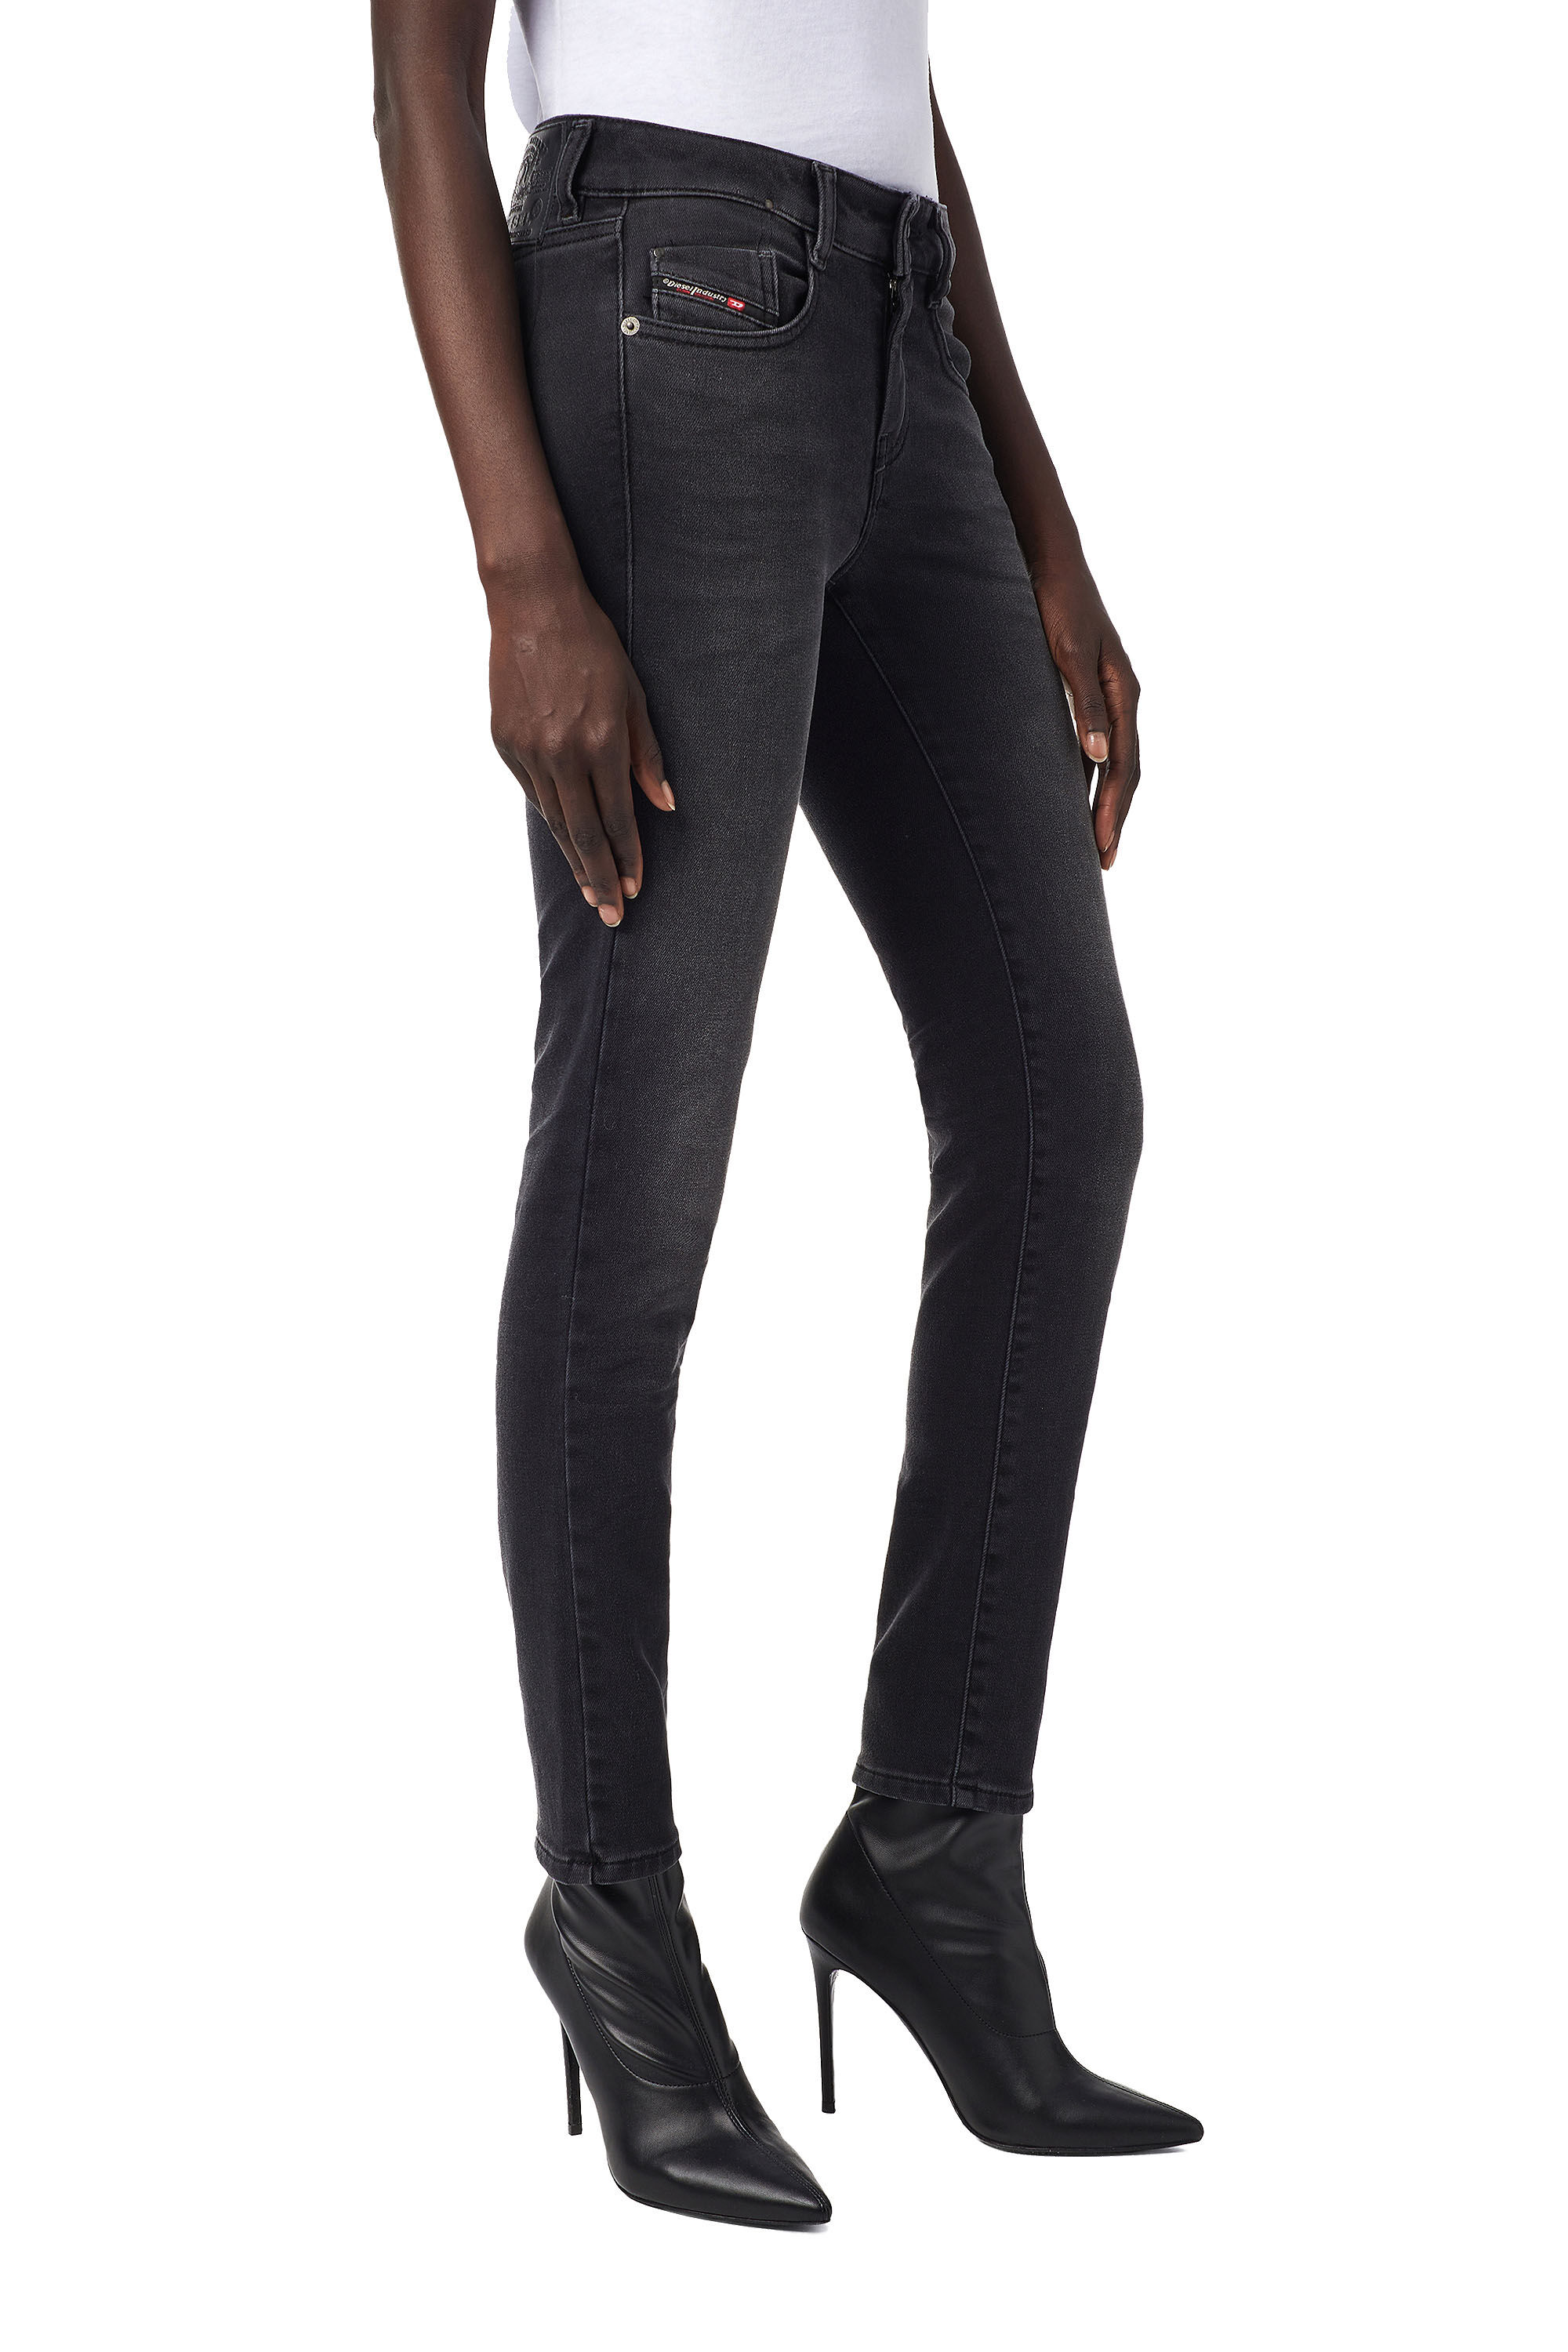 Diesel - D-Ollies JoggJeans® 09B22 Slim, Black/Dark Grey - Image 7